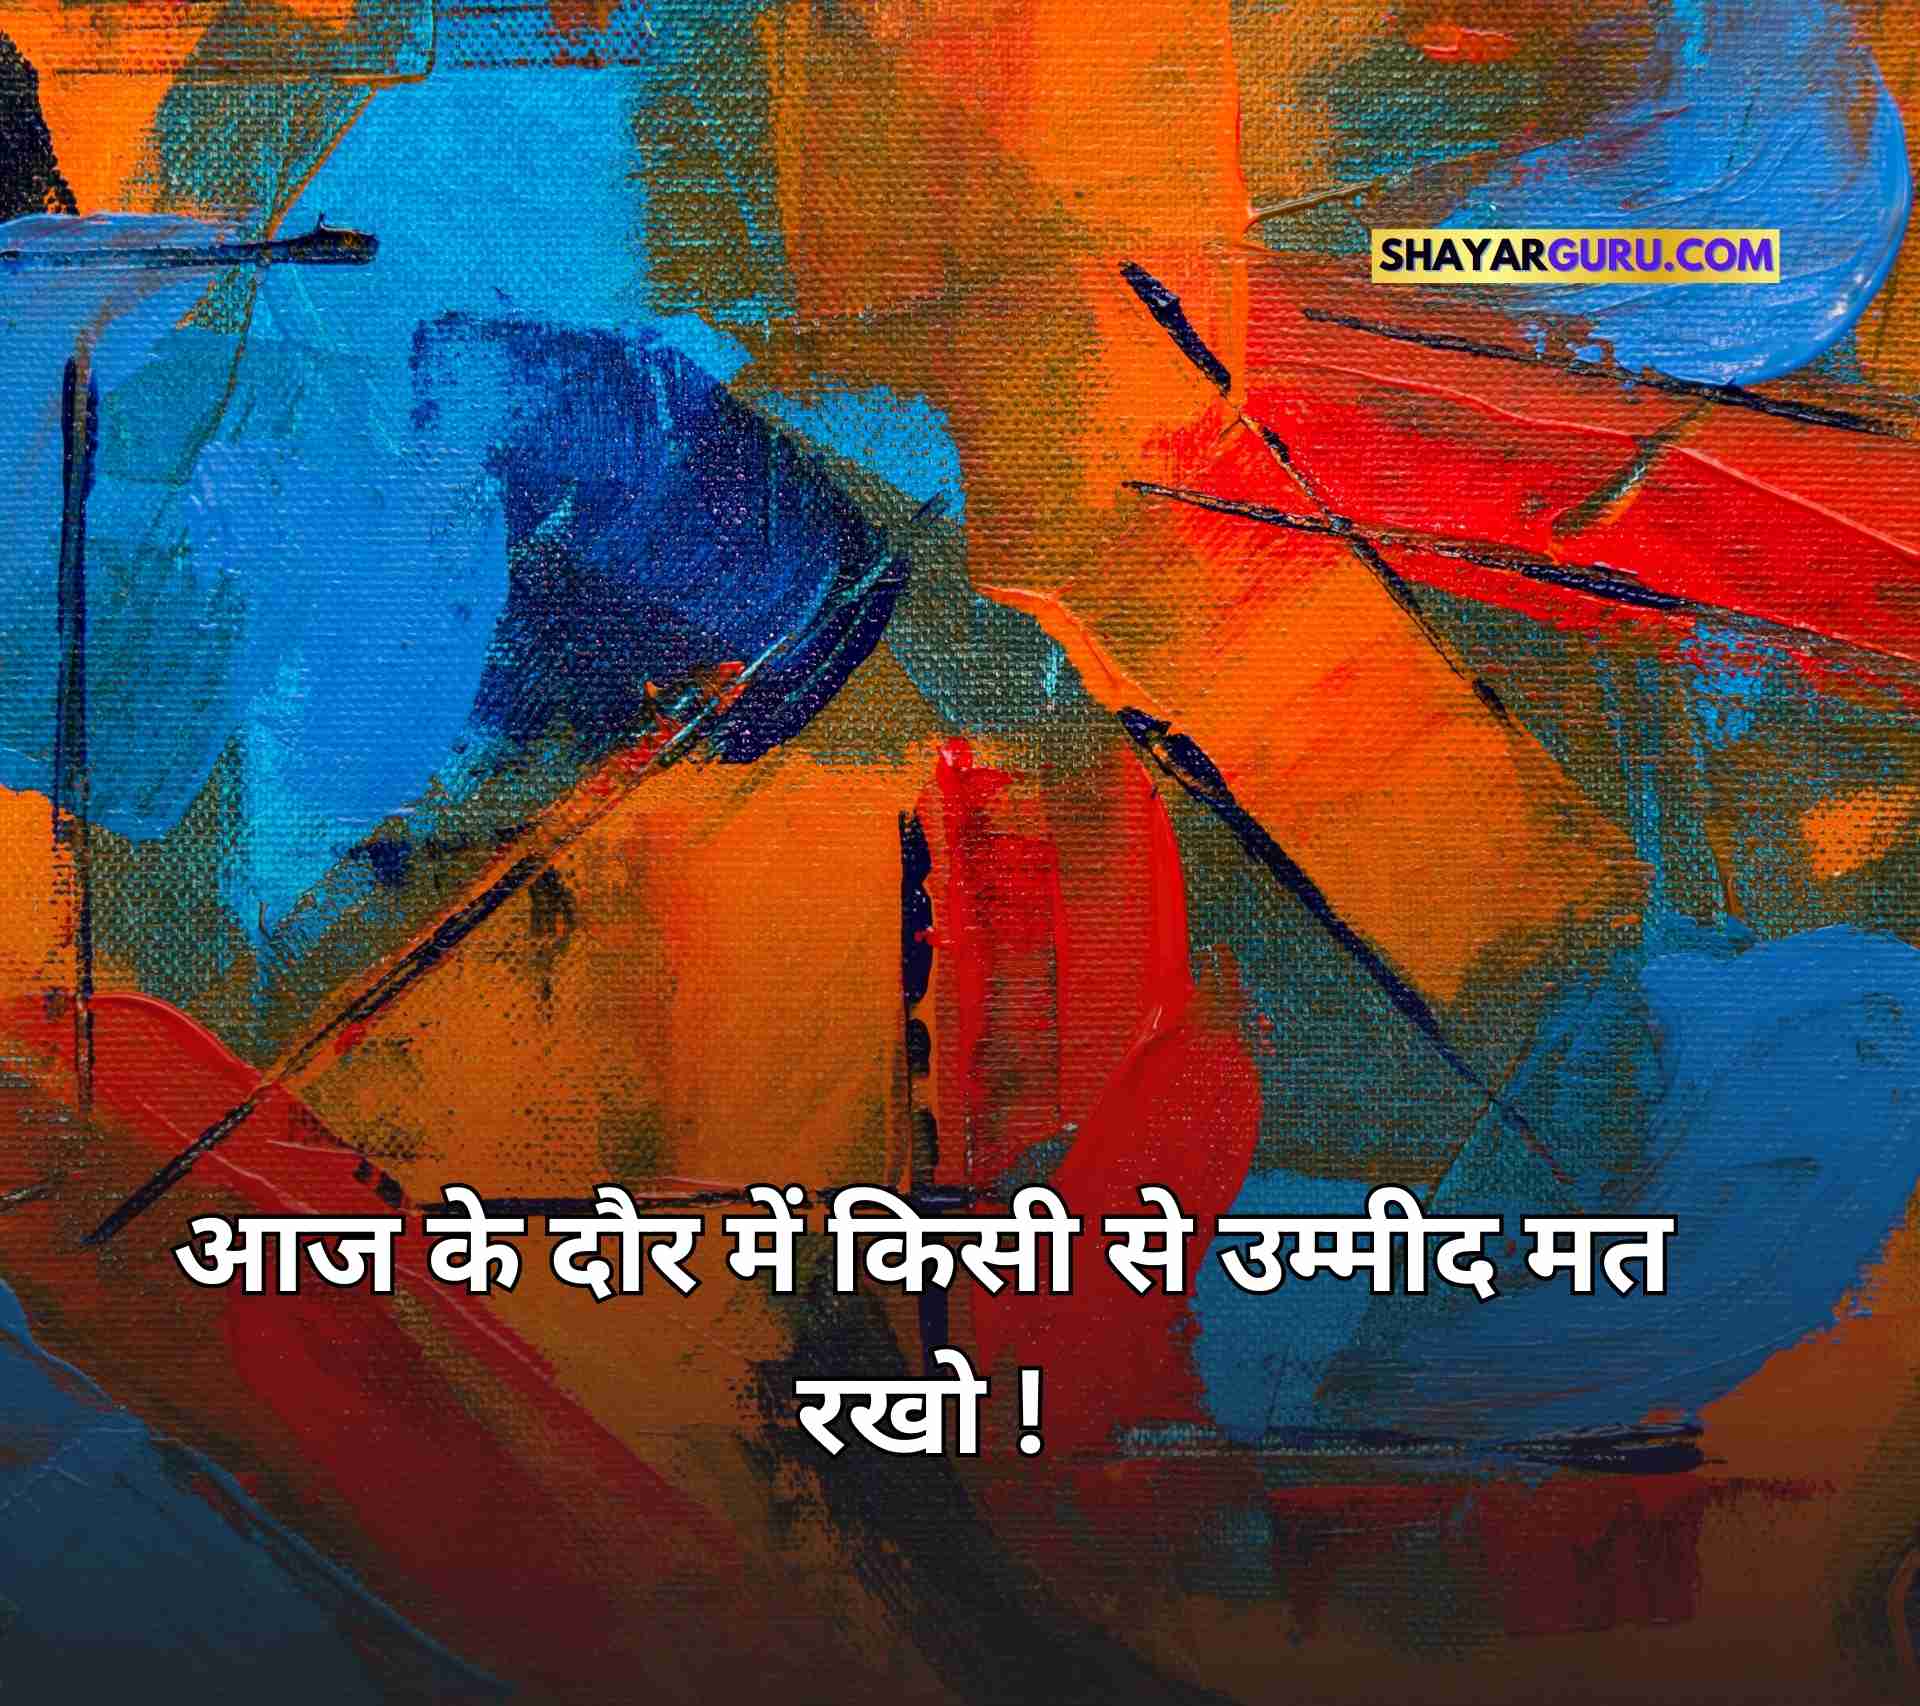 Kisi Ke Liye Kitna Bhi Karo Quotes in Hindi Image